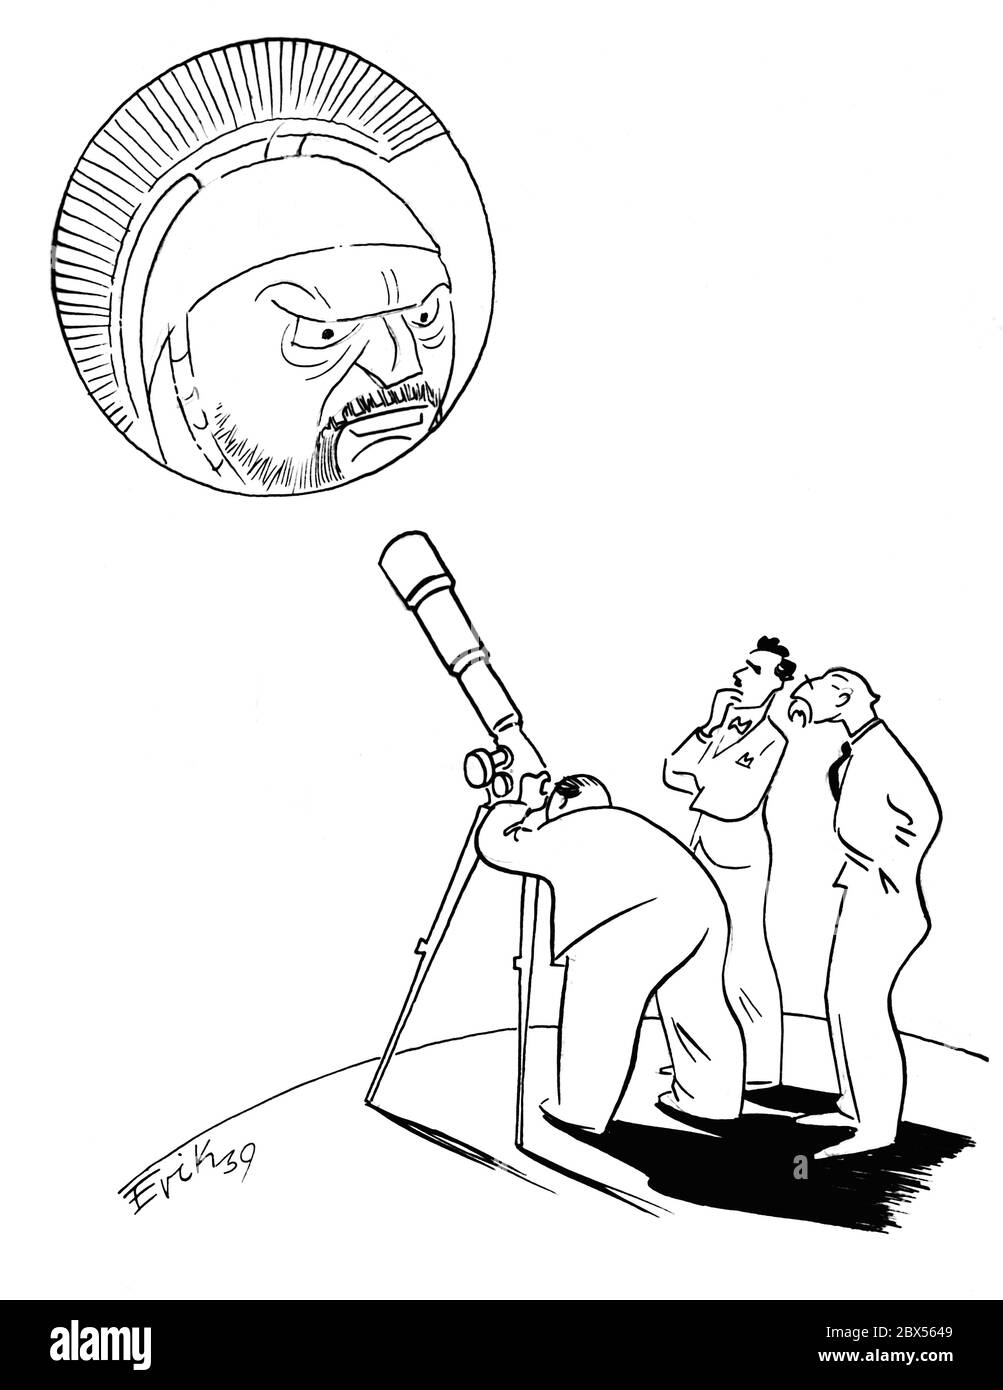 Una caricatura de Erik muestra a tres personas, incluyendo Winston Churchill y Anthony Eden, mirando el planeta Marte a través de un telescopio: "Es una pena que no podamos acercarlo aún más". Foto de stock